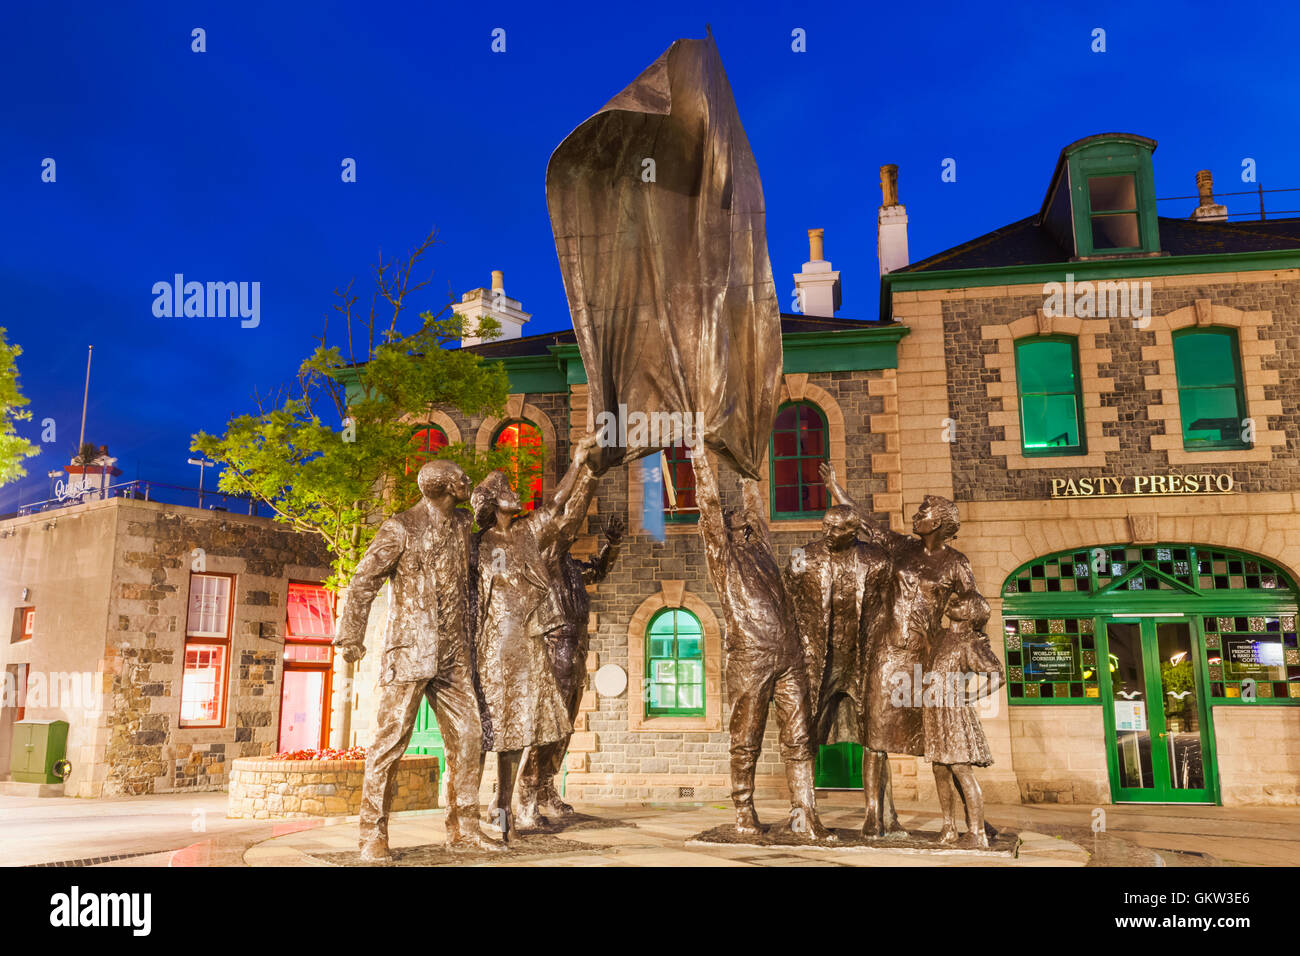 Royaume-uni, Iles Anglo-Normandes, Jersey, St Helier, Place de la libération, la libération Statue par Phillip Jackson Banque D'Images